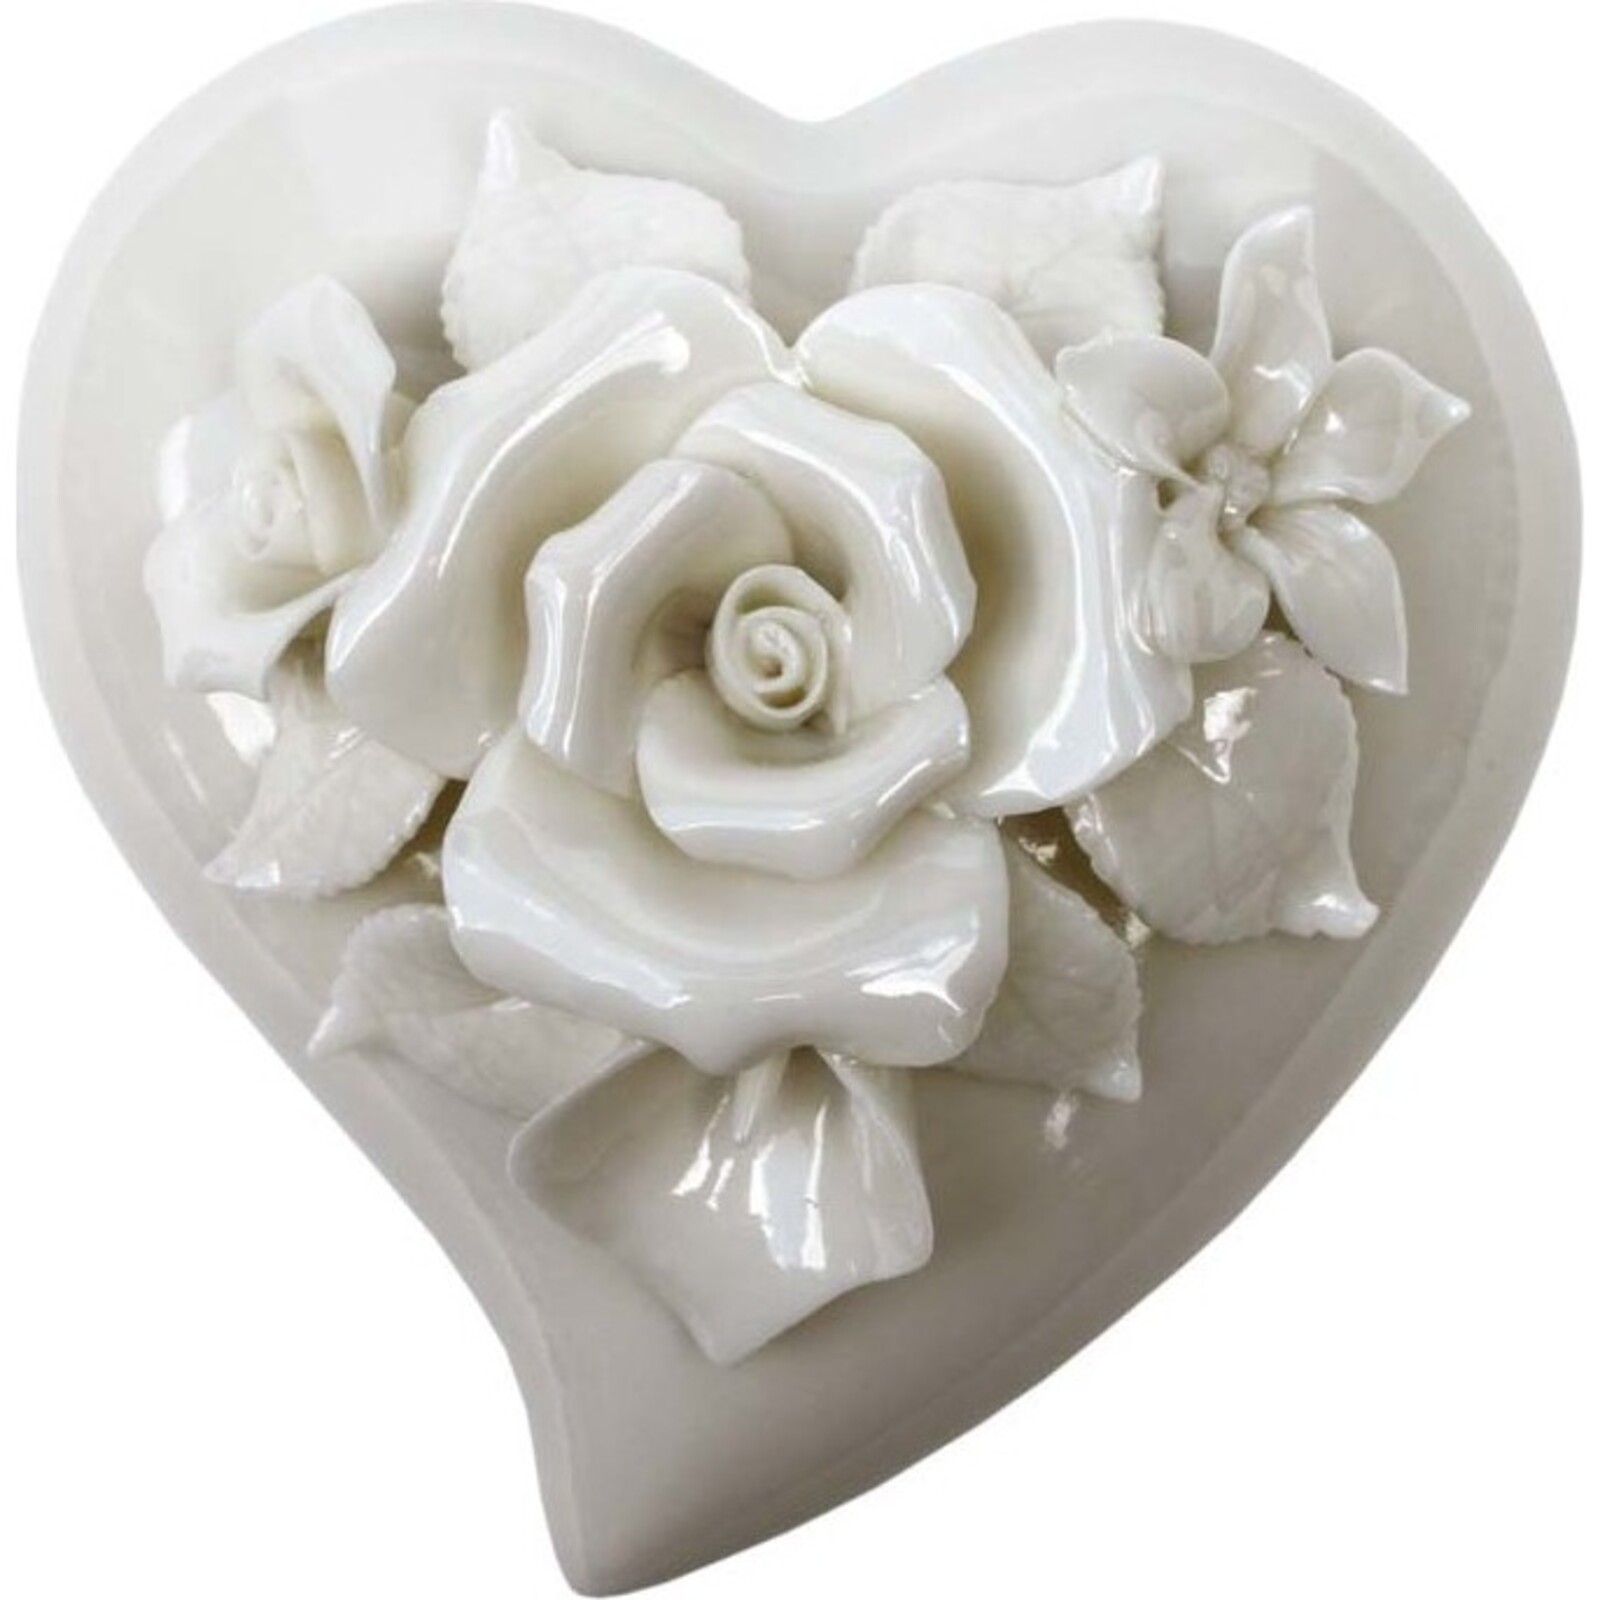 Heart Trinket Box - White Rose